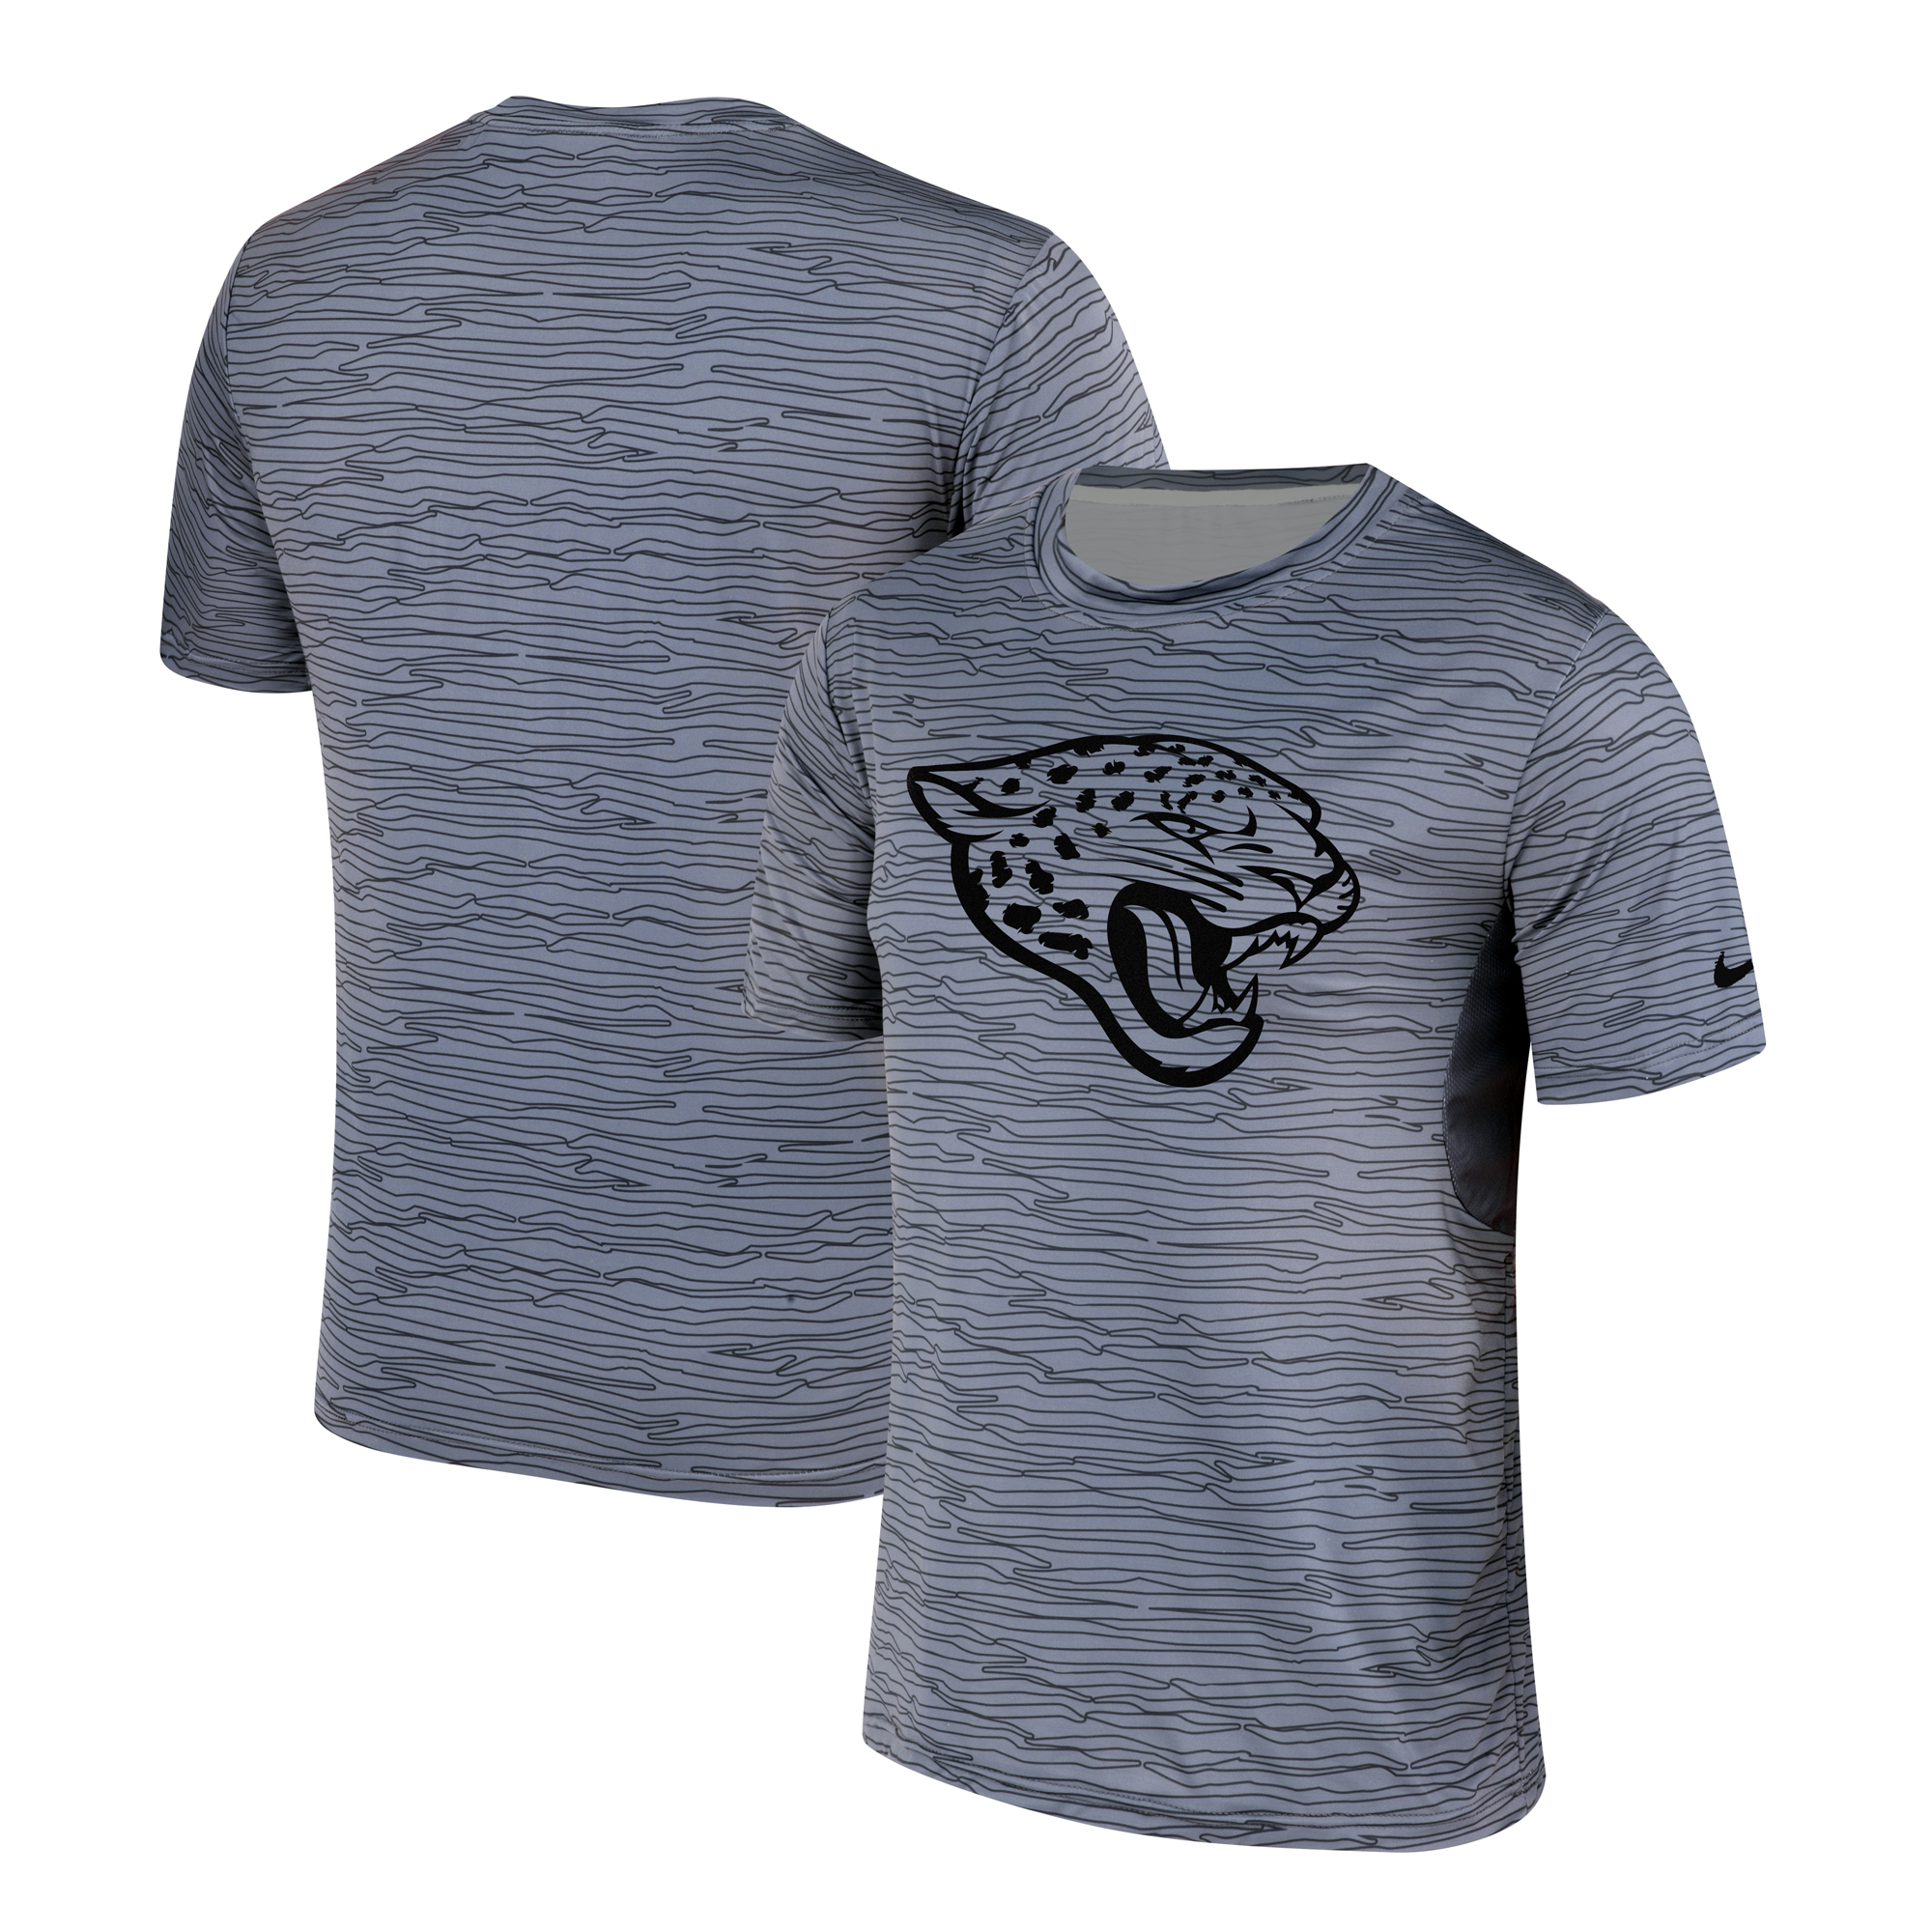 Men's Jacksonville Jaguars Nike Gray Black Striped Logo Performance T-Shirt